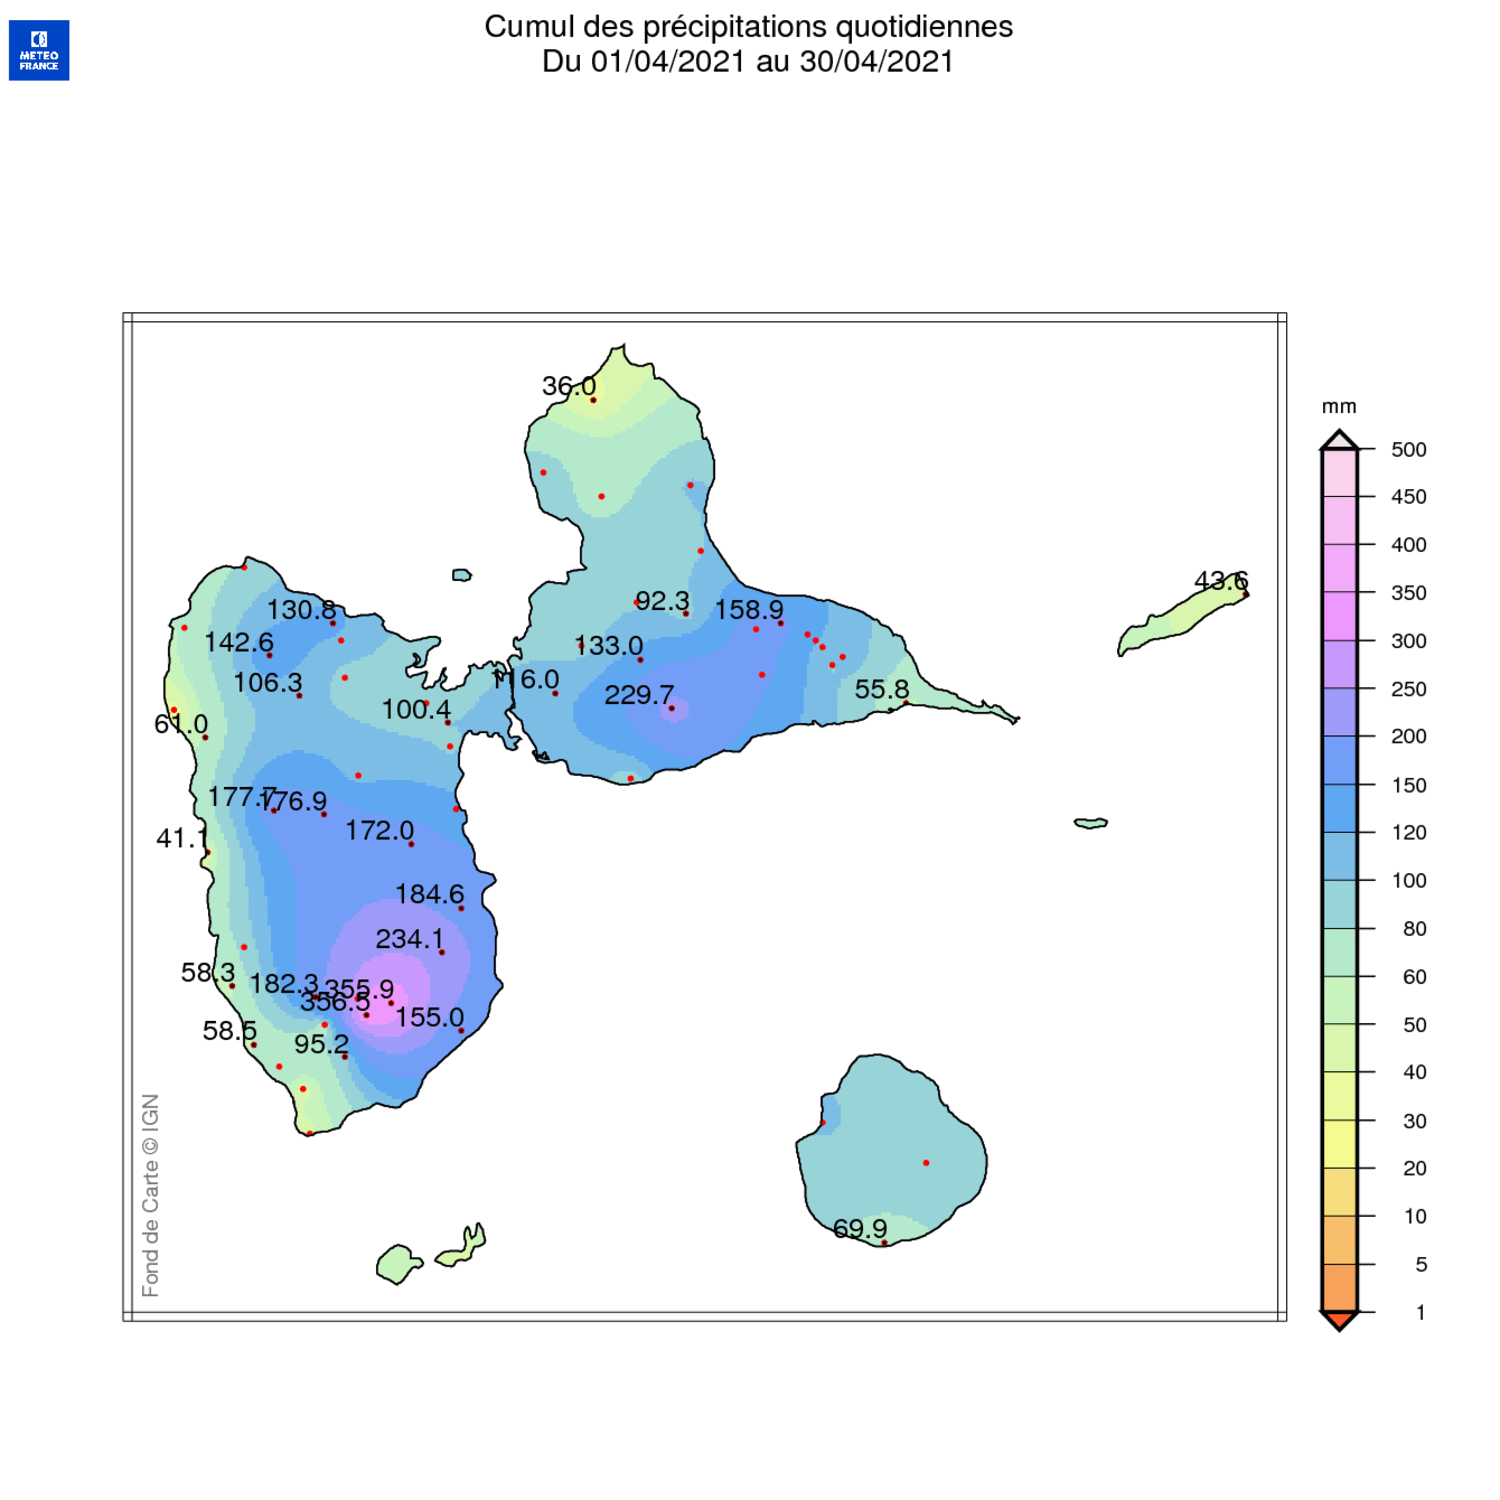 Carte de la pluviométrie et rapport à la normale 1981-2010 sur l'archipel guadeloupéen en avril 2021